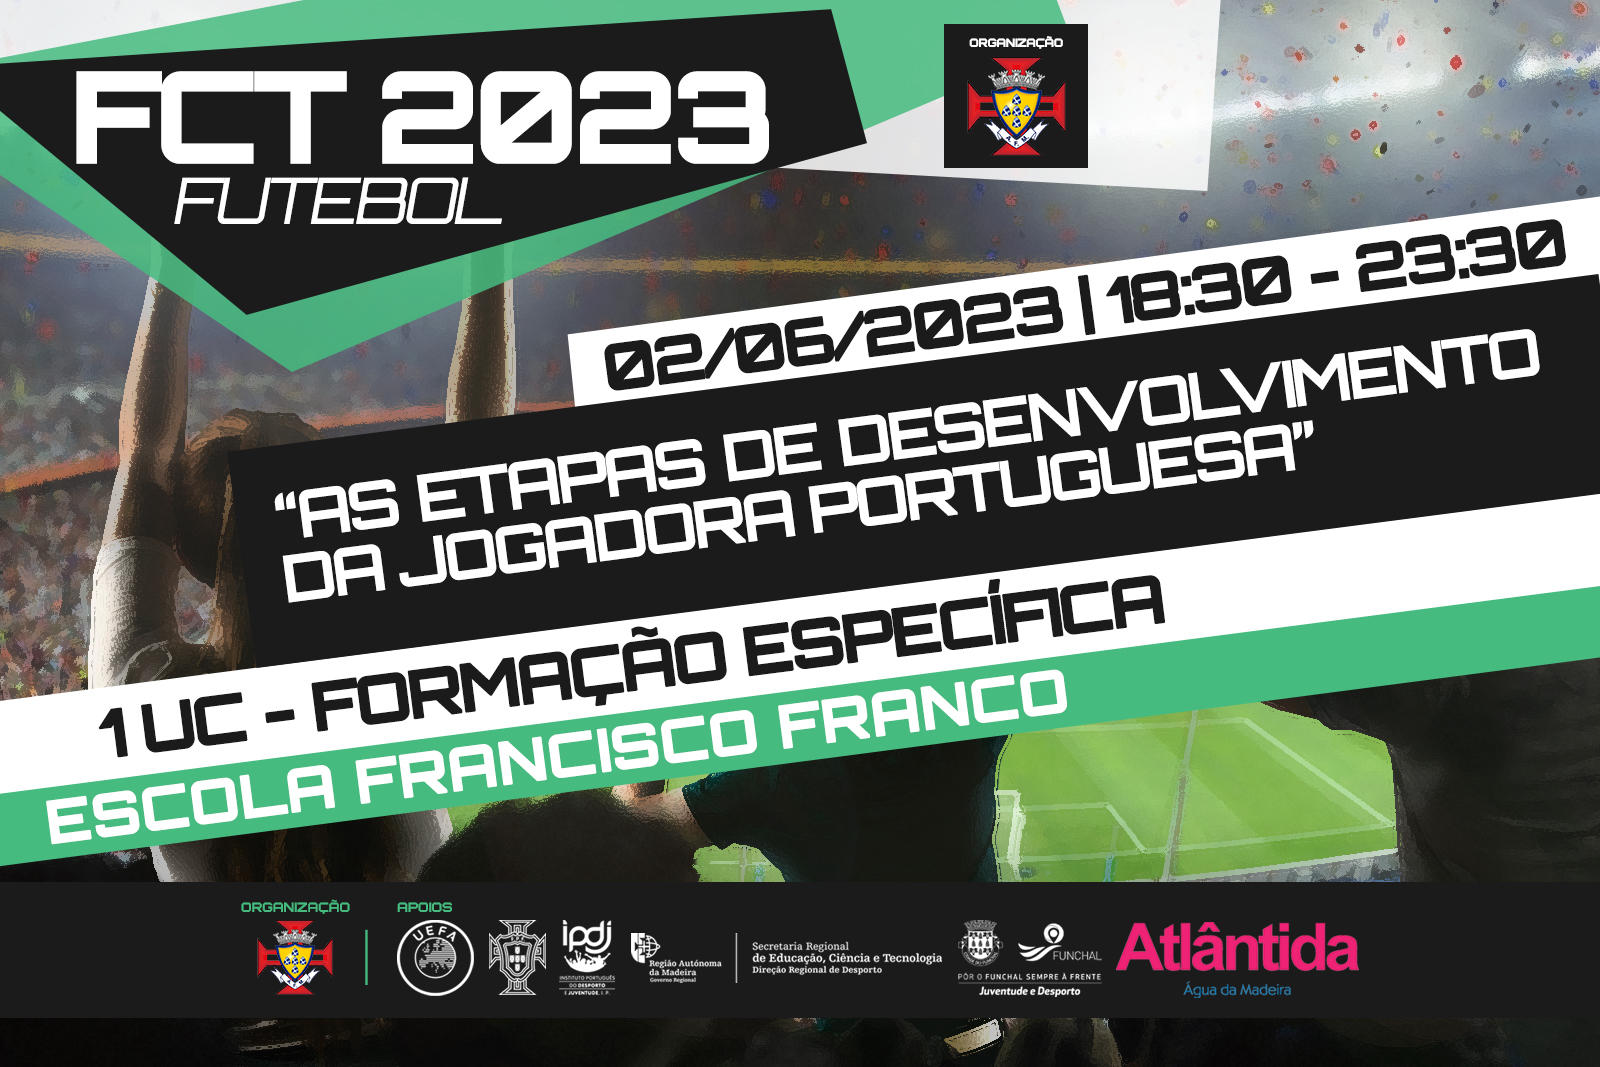 FCT 2023 - "As etapas de desenvolvimento da jogadora portuguesa"